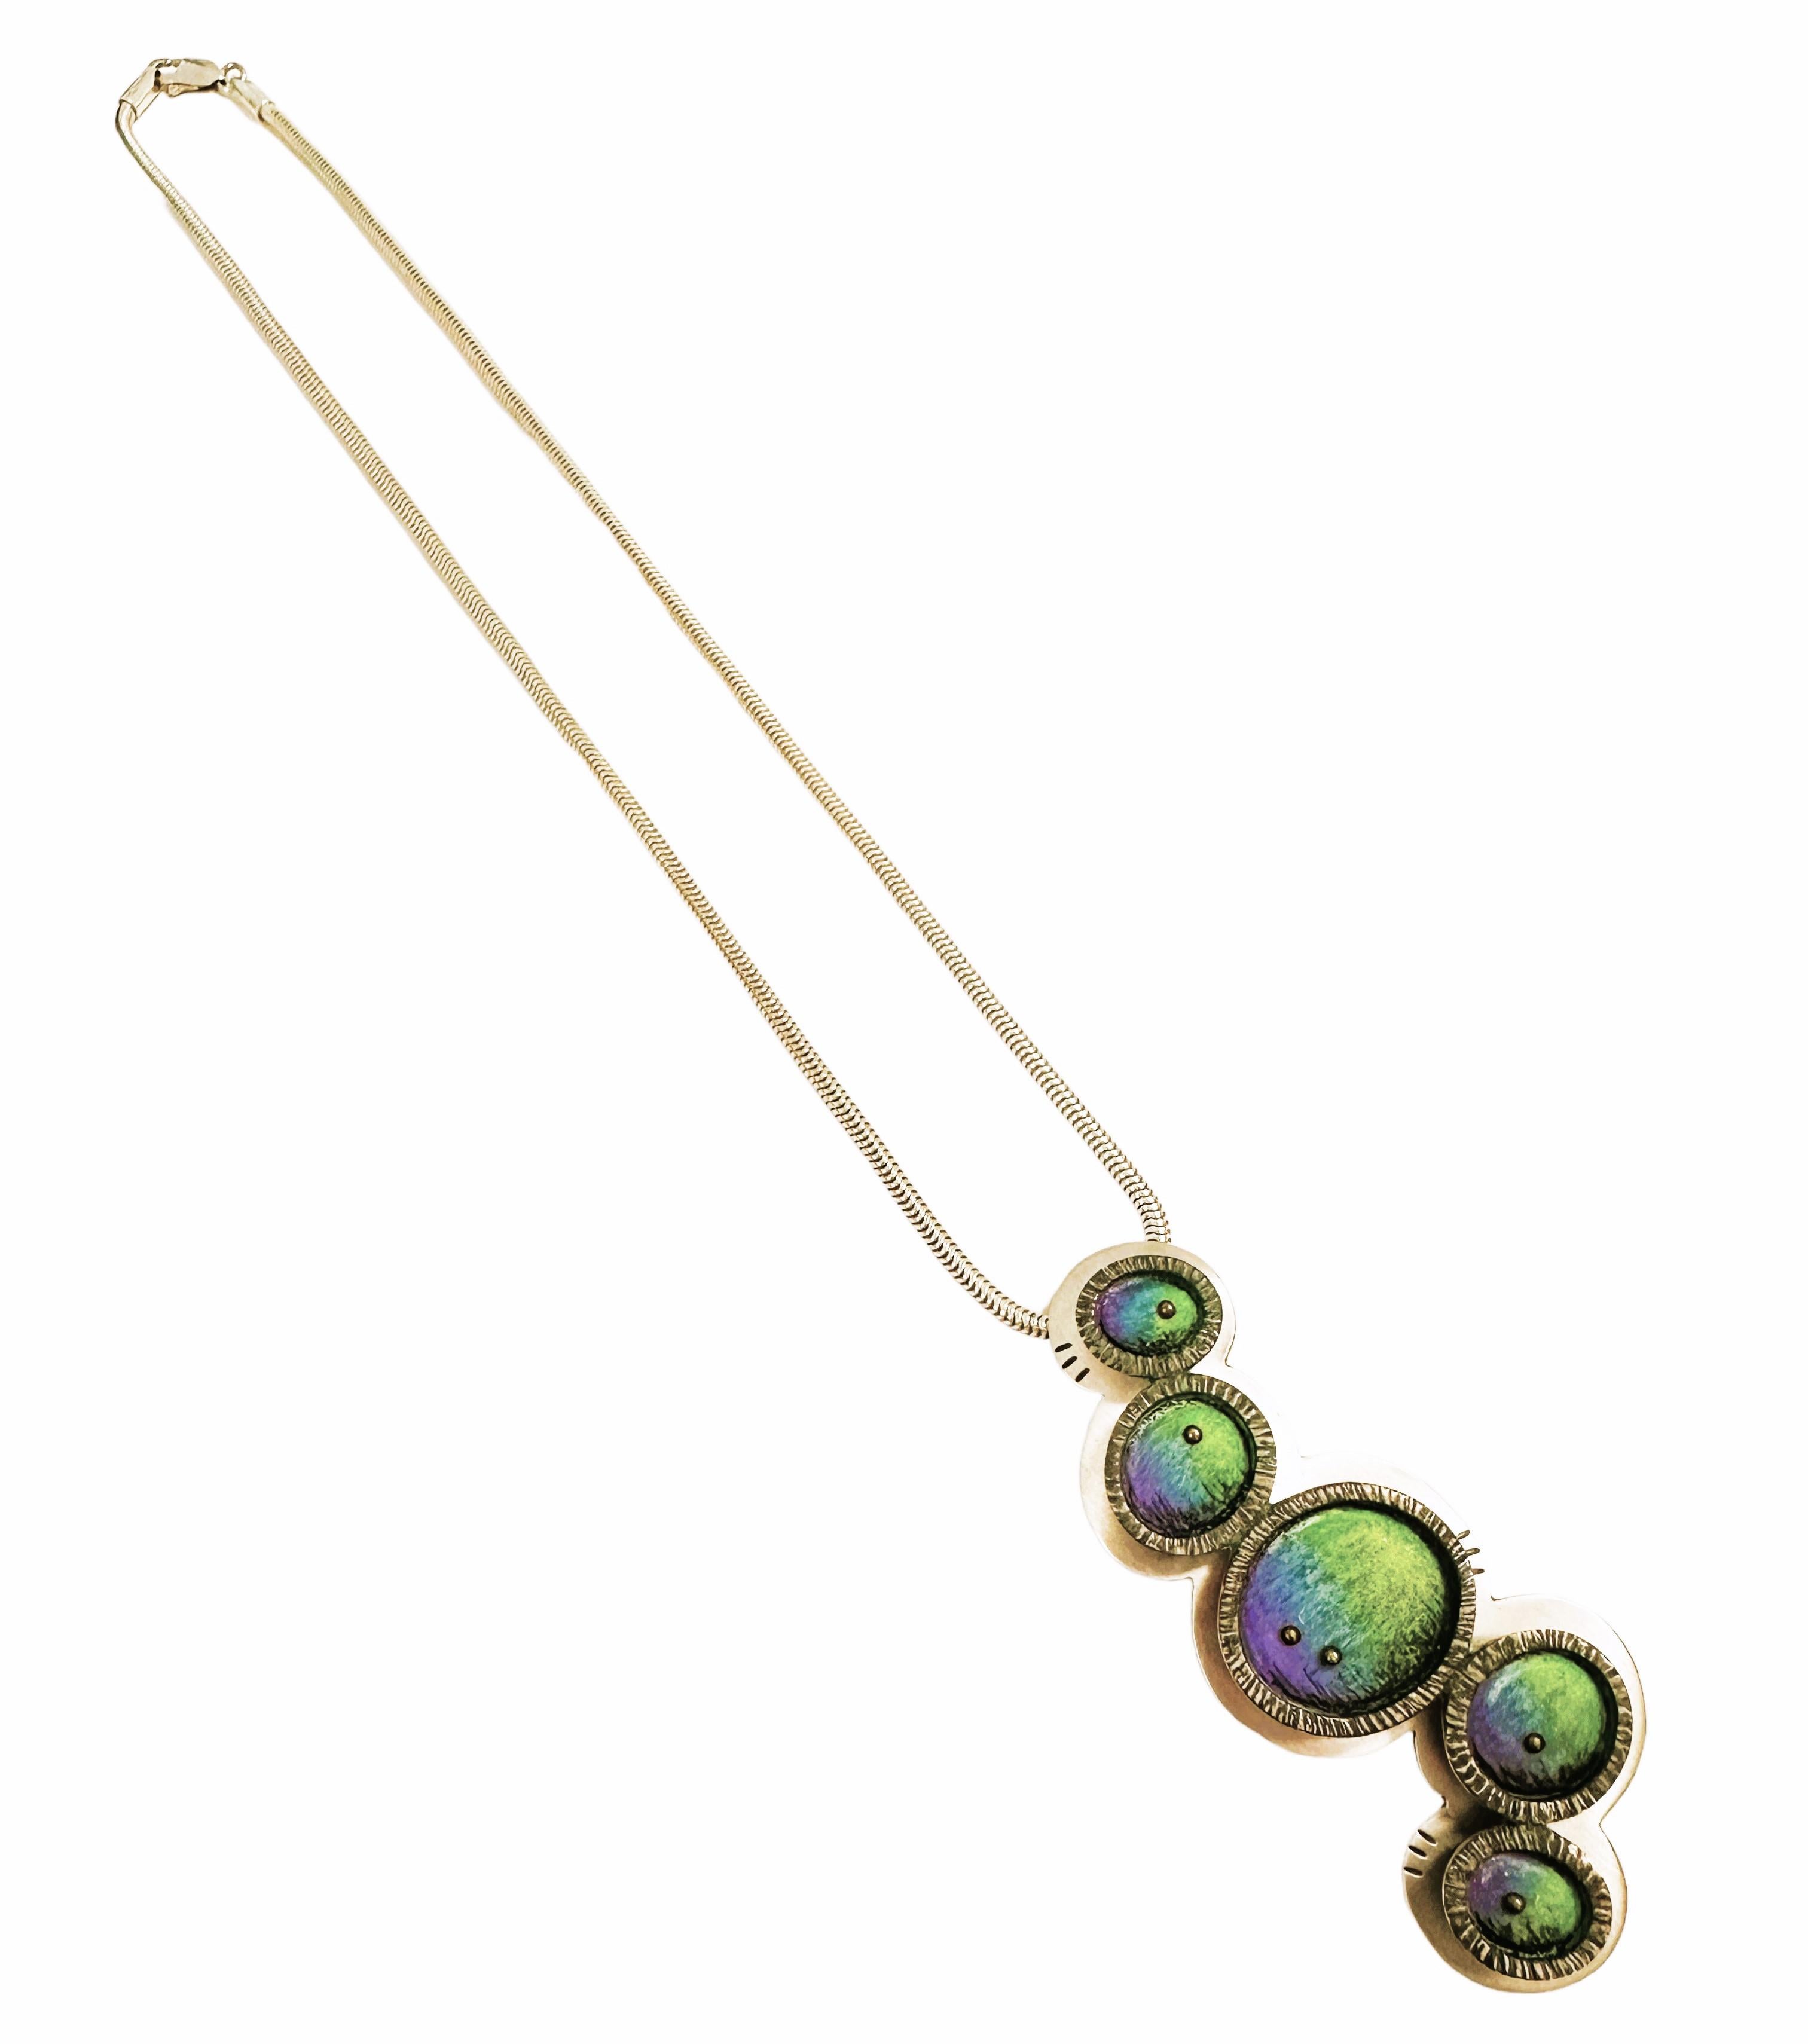 Designer Sterling Silver Colored Sphere Pendant/Brooch Necklace Deb Karash 1